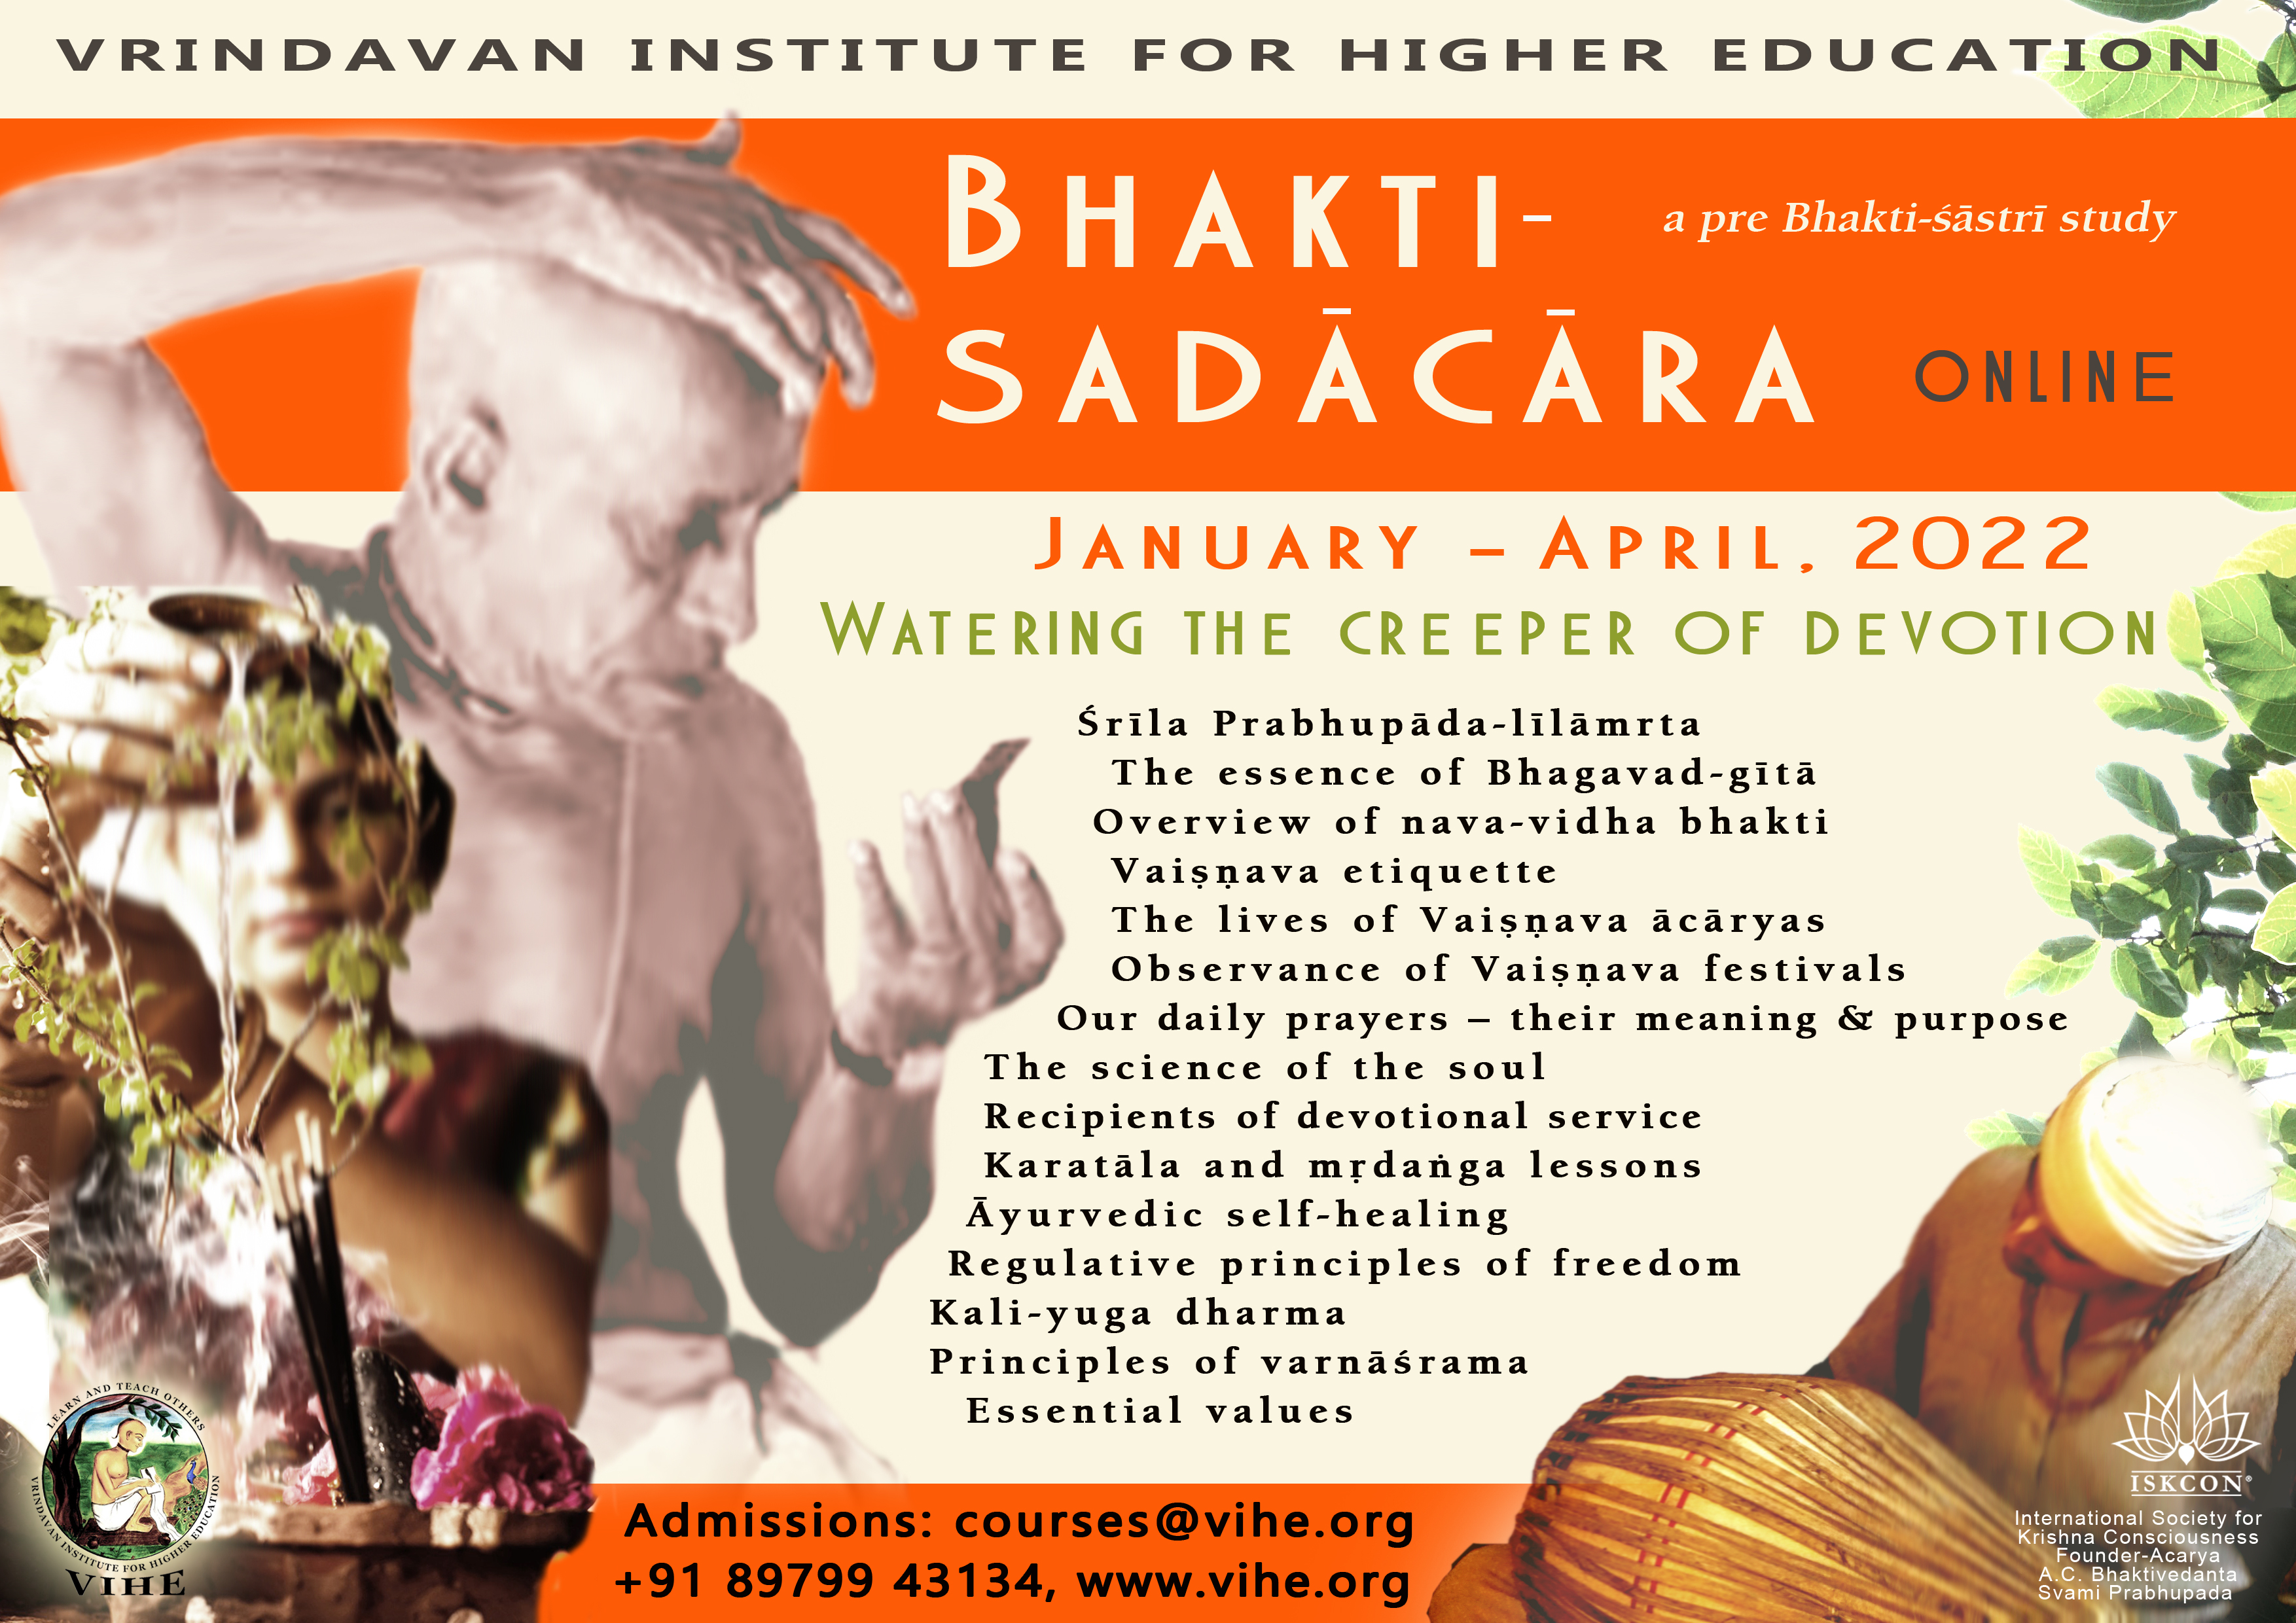 VIHE Online Bhakti-sadacara Course